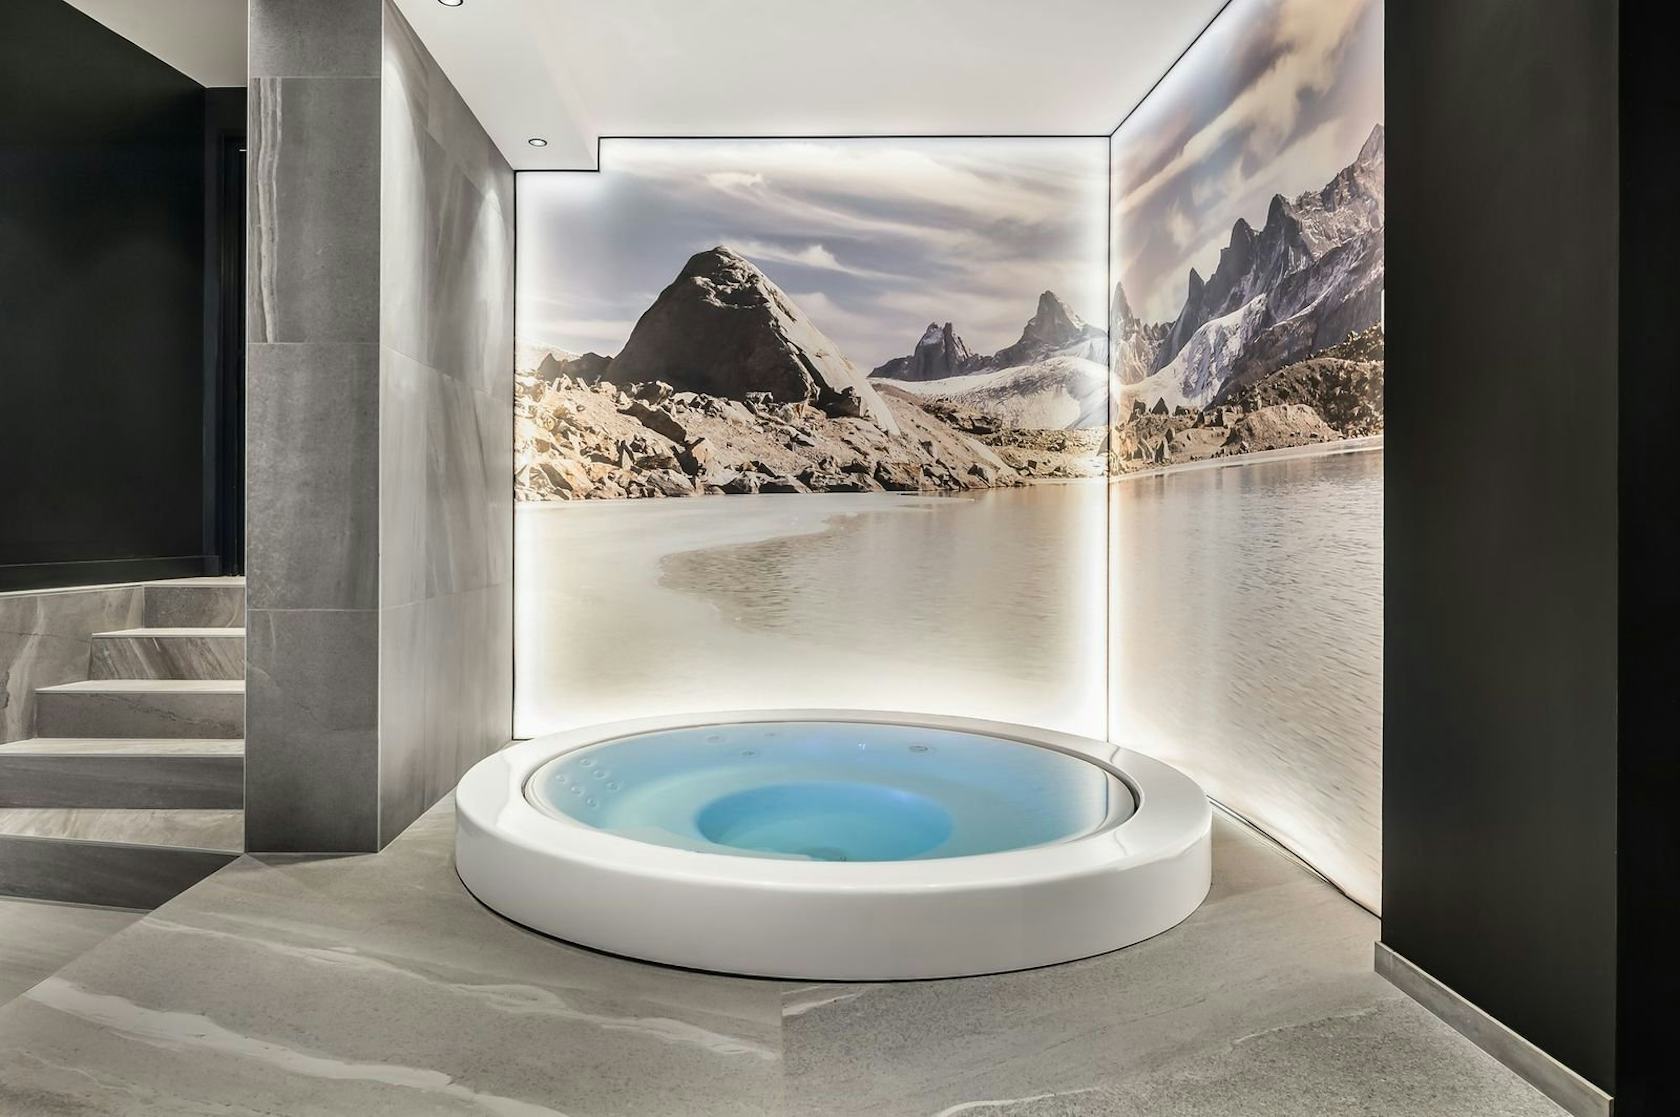 tub jacuzzi hot tub interior design indoors